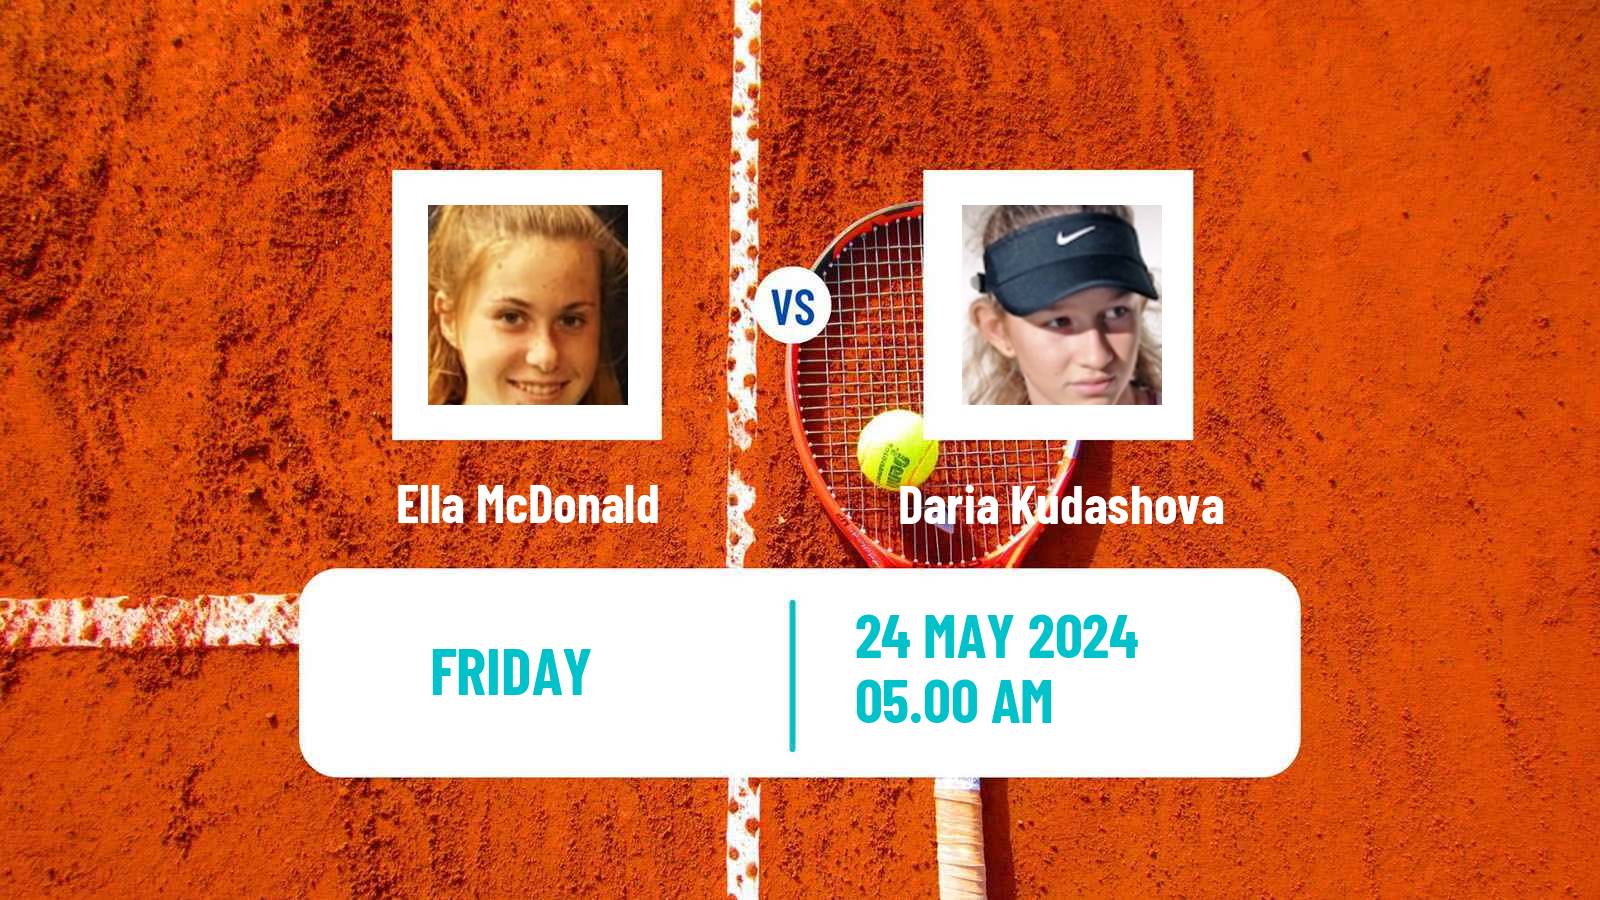 Tennis ITF W15 Monastir 19 Women Ella McDonald - Daria Kudashova